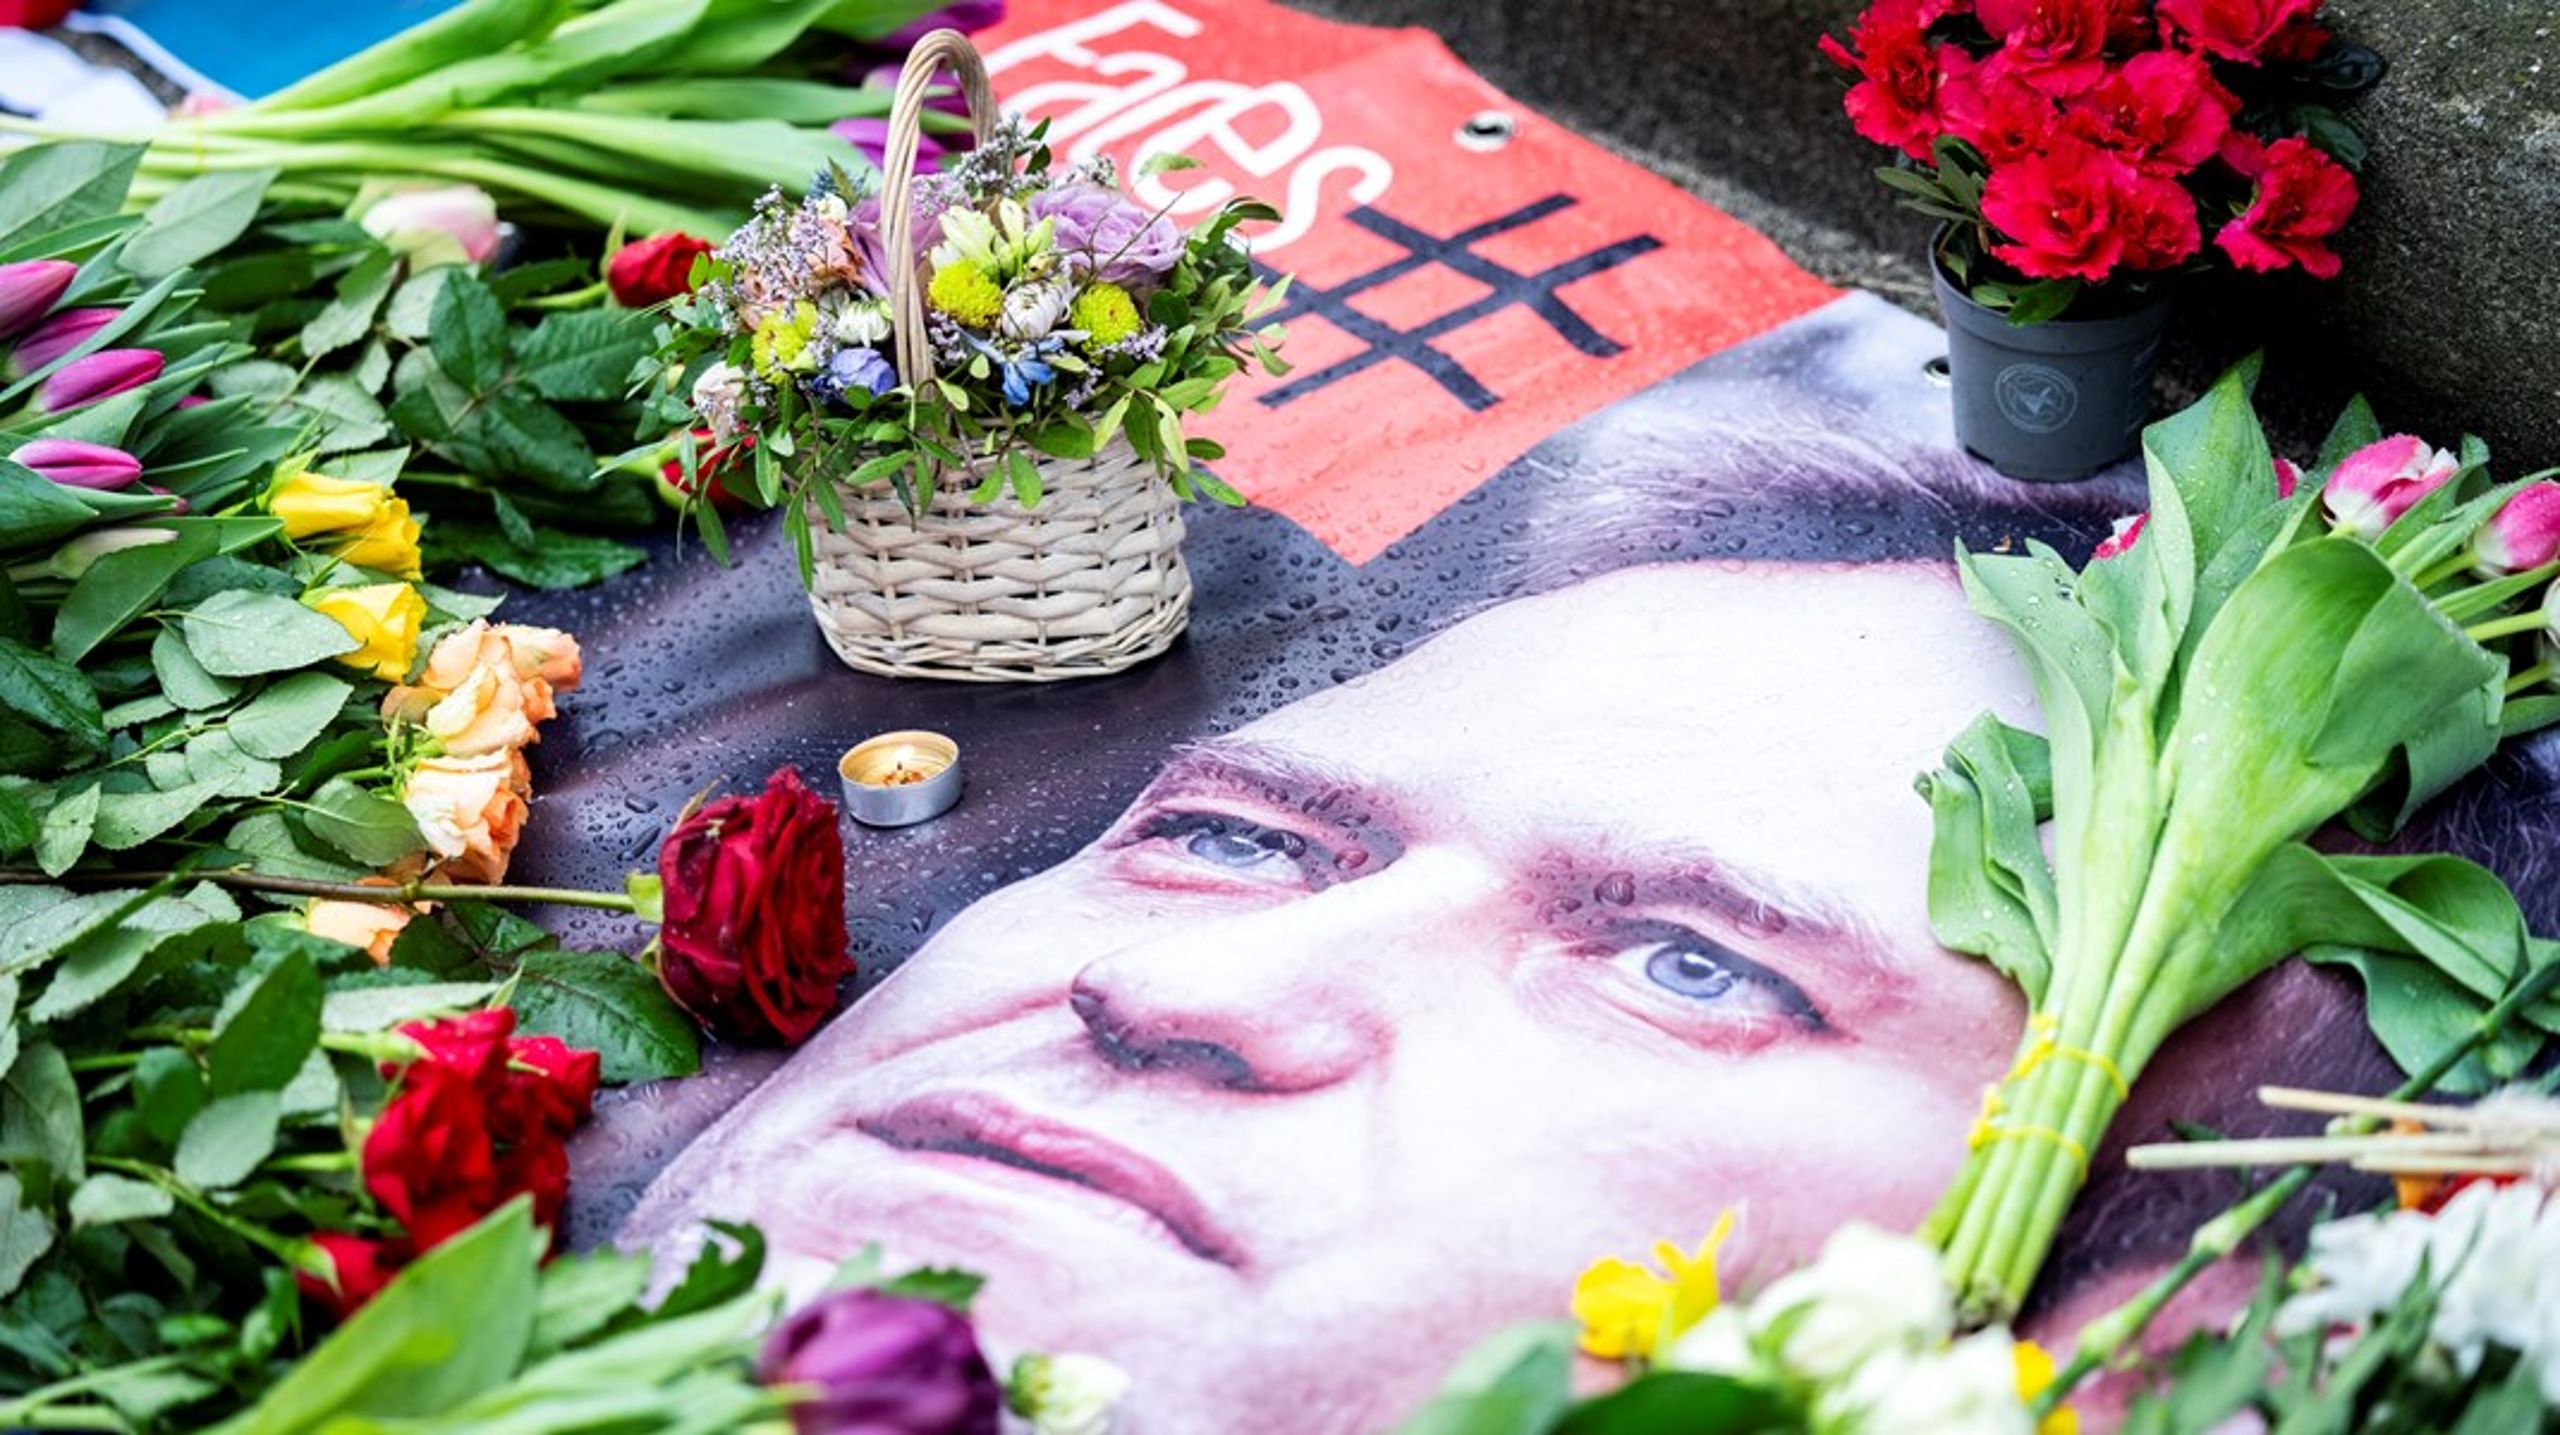 Den ryske oppositionspolitikern Aleksej Navalnyj kämpade outtröttligt för frihet, rättvisa och demokrati. Den 16 februari kom beskedet att han hade mist livet i det arktiska strafflägret där han var internerad. Hela världen sörjer nu bortgången – men den känslan kan också användas till handling, skriver Altinget Norges EU-analytiker Jette F. Christensen.